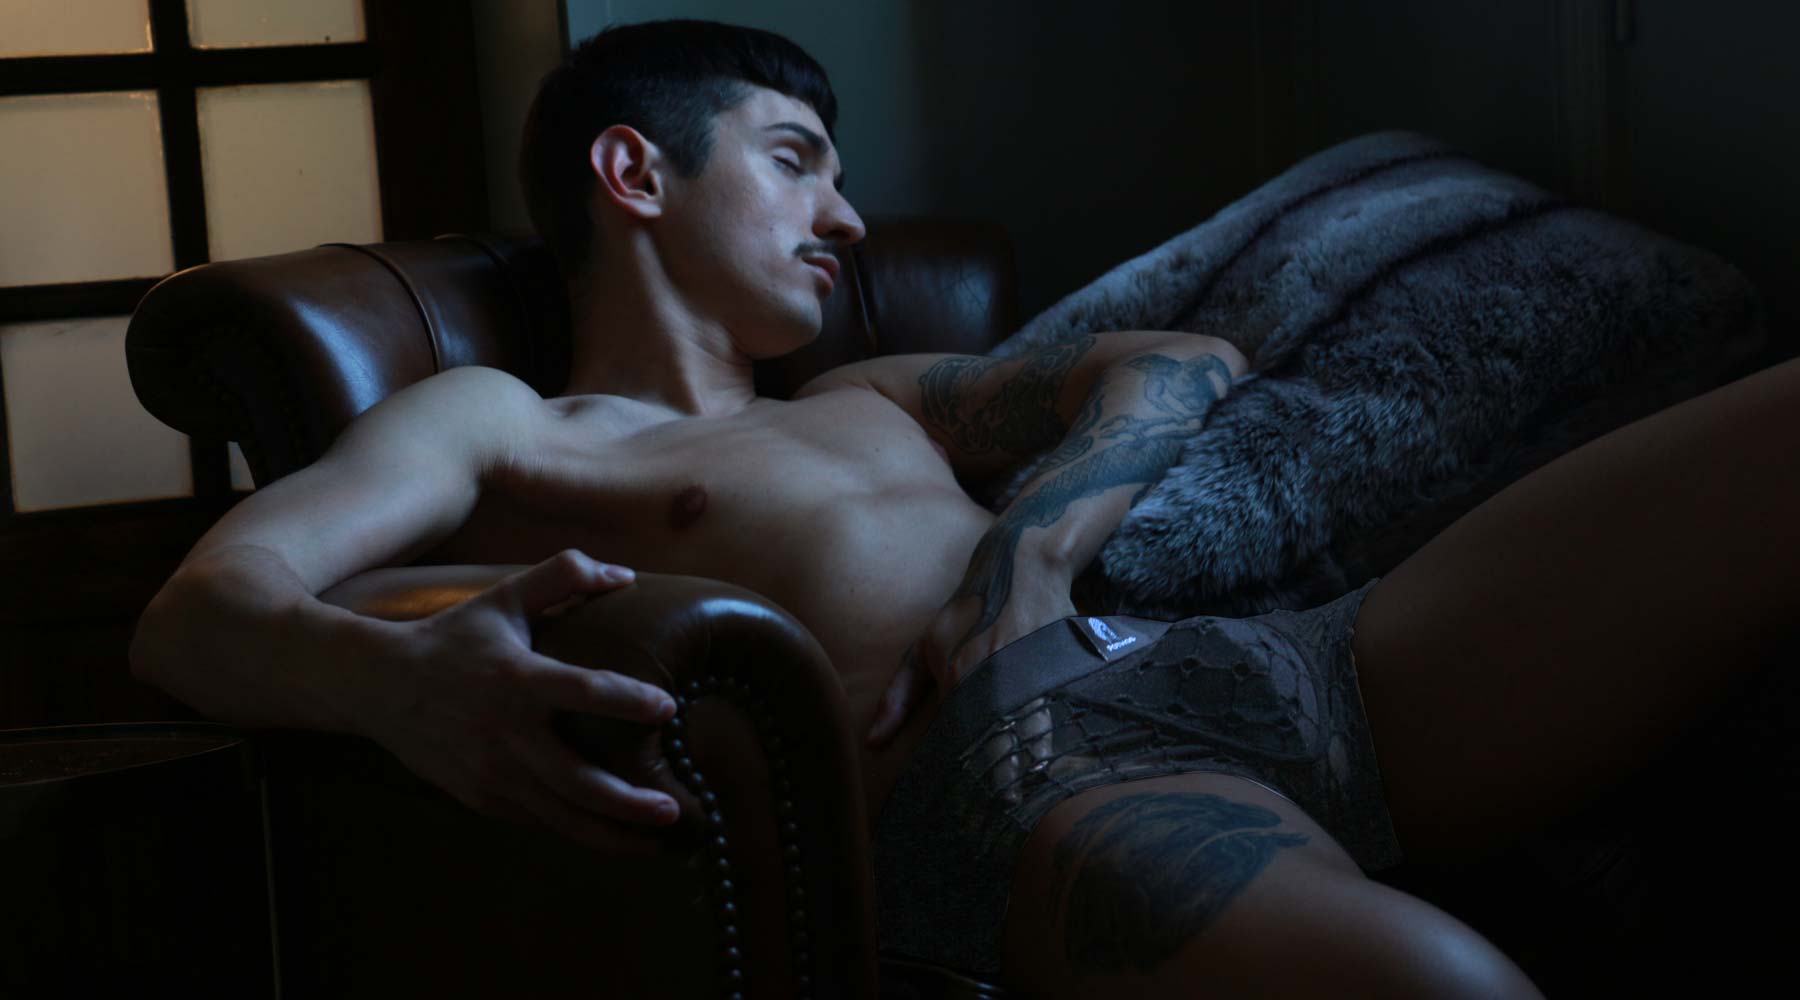 Male underwear model wearing Pothos Underwear while sleeping.